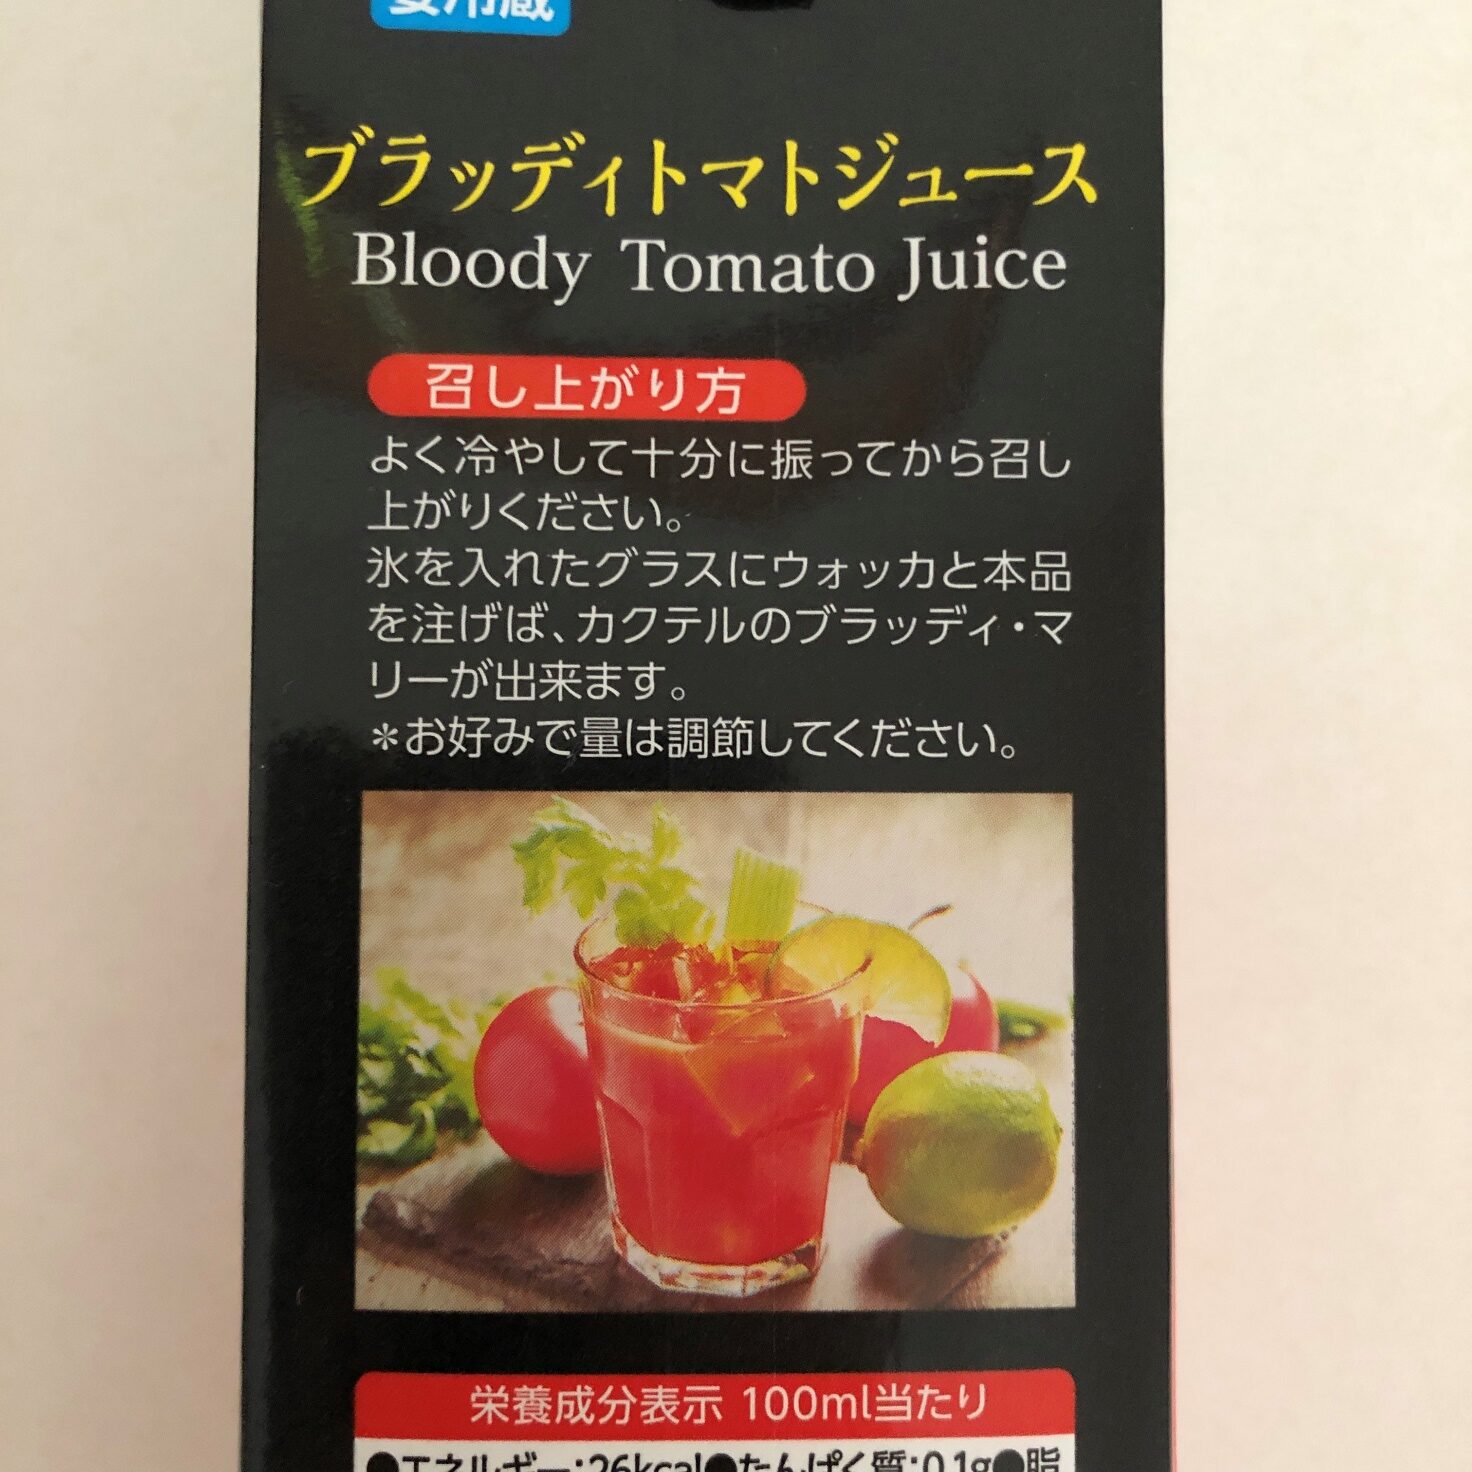 業務スーパーのブラッディトマトジュースのパッケージに記載されている召し上がり方